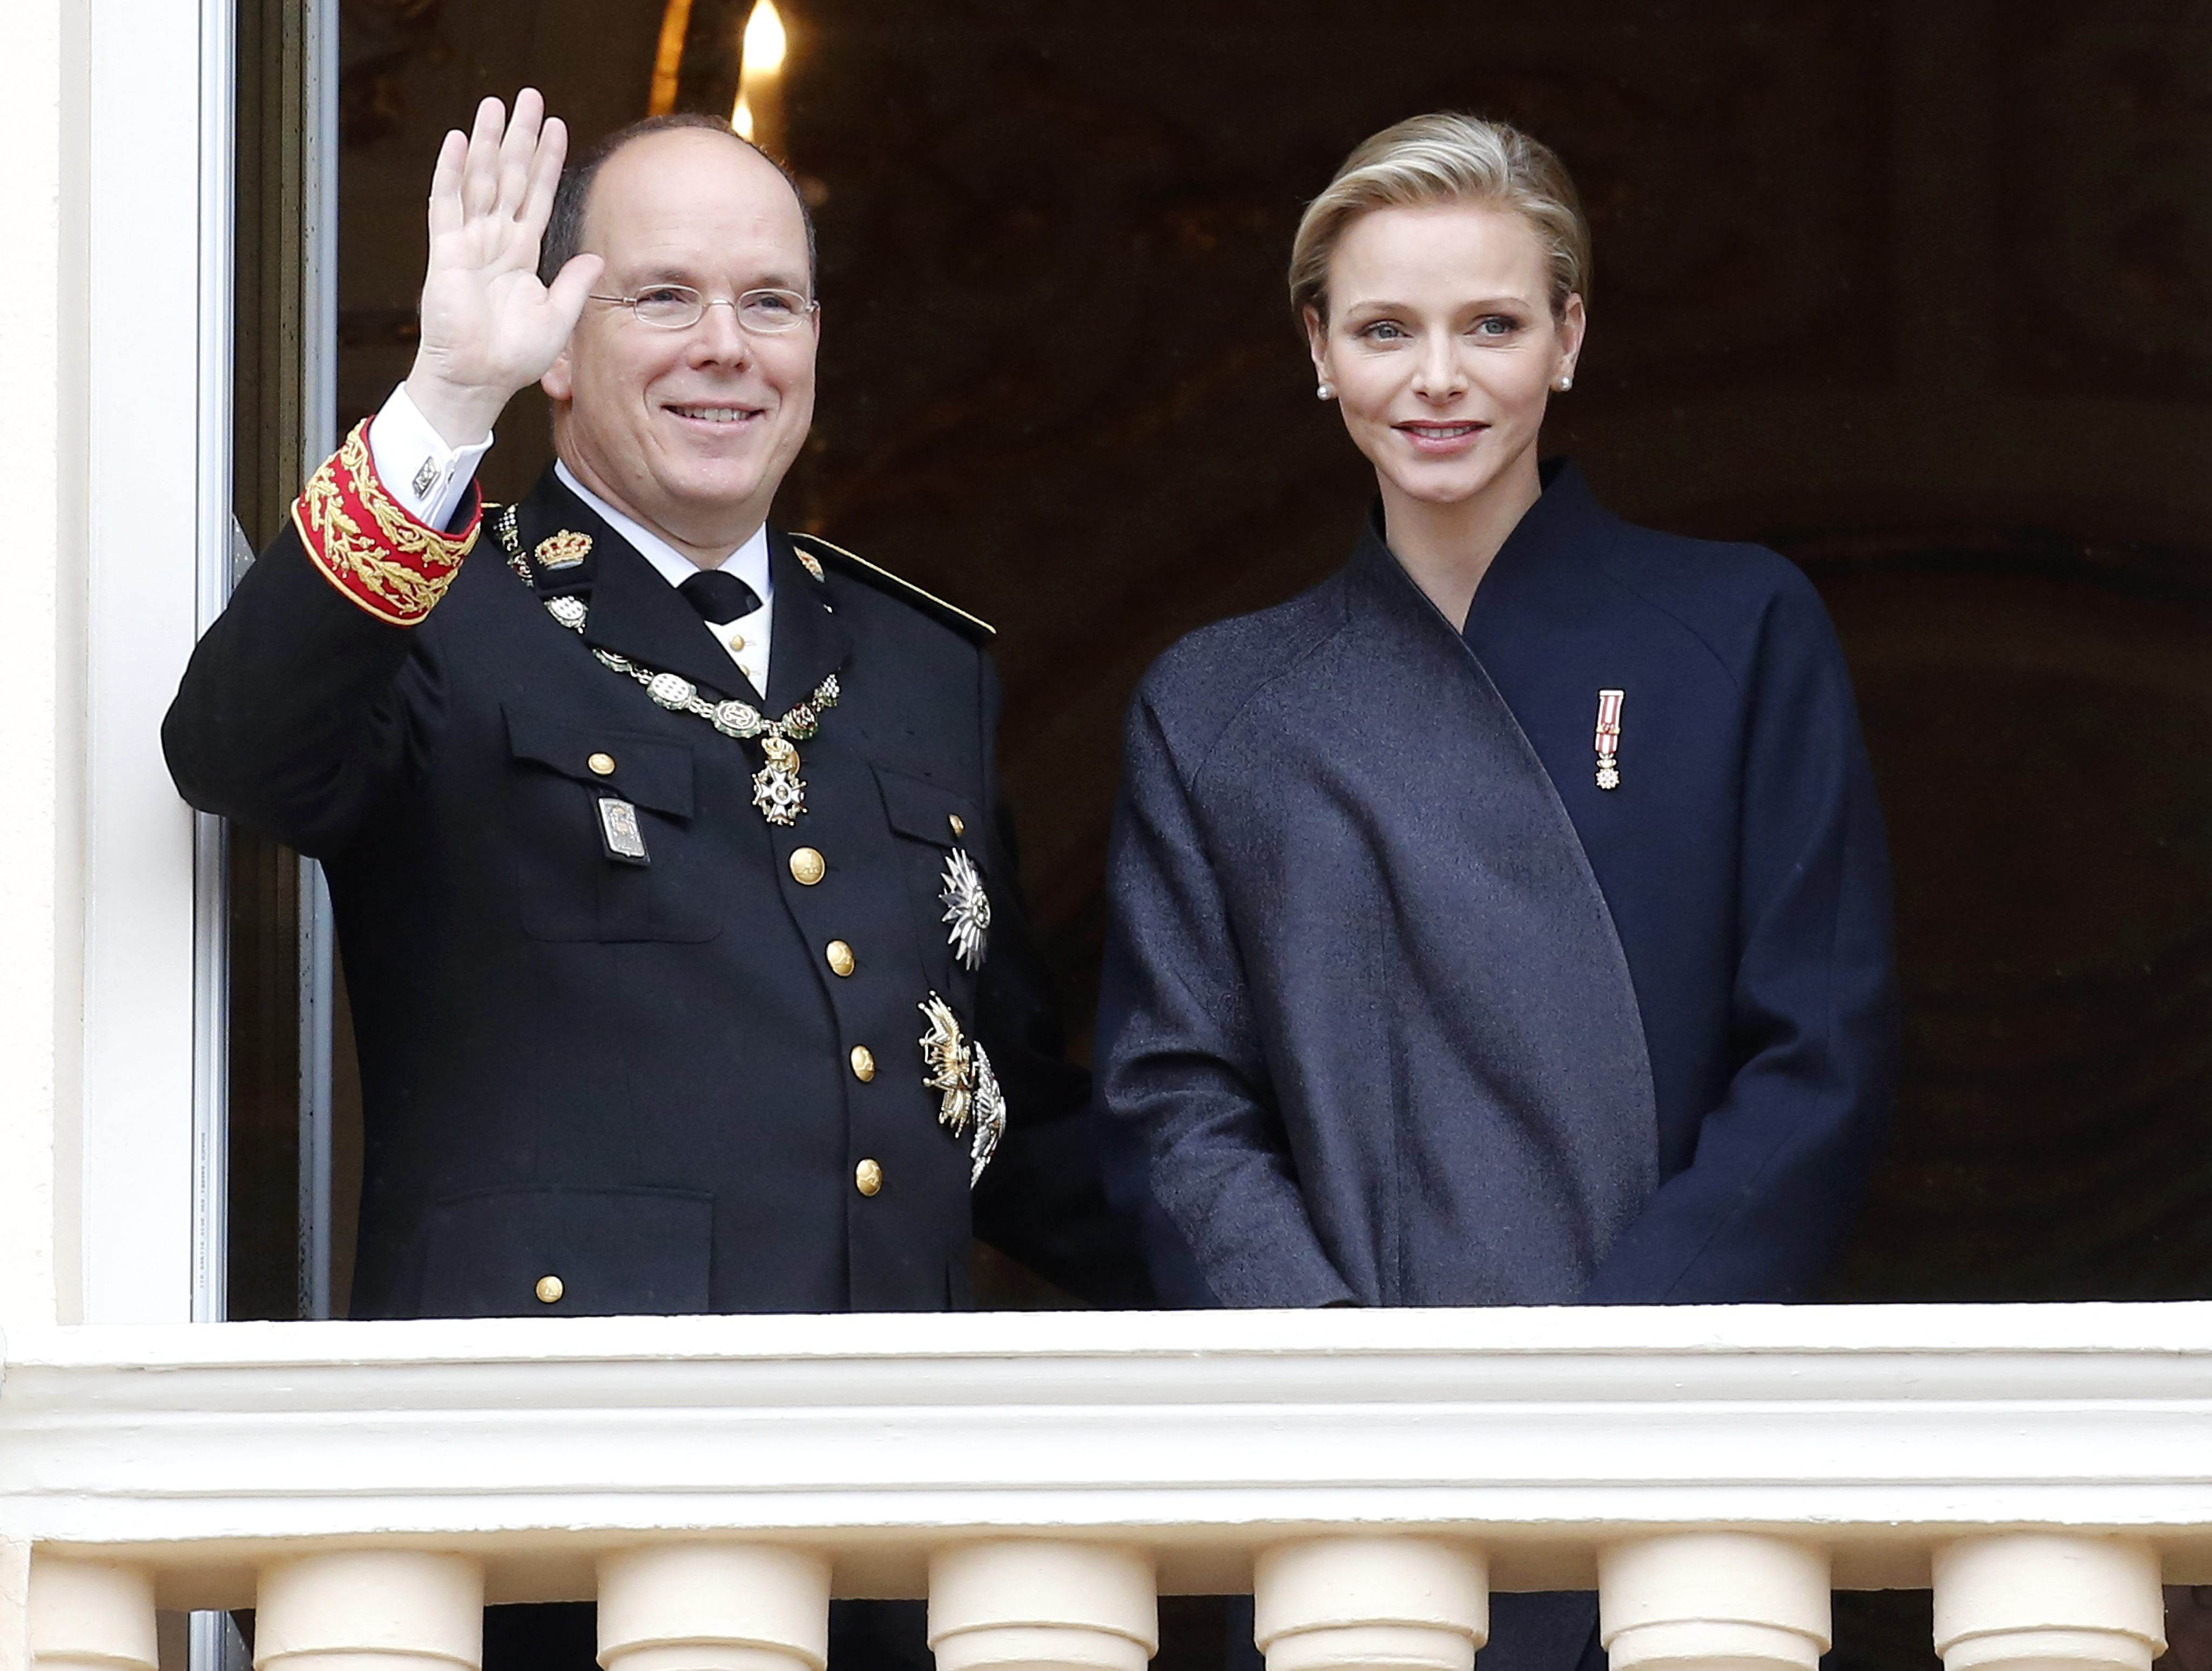 Alberto II y Charlene de Mónaco anuncian que esperan su primer hijo